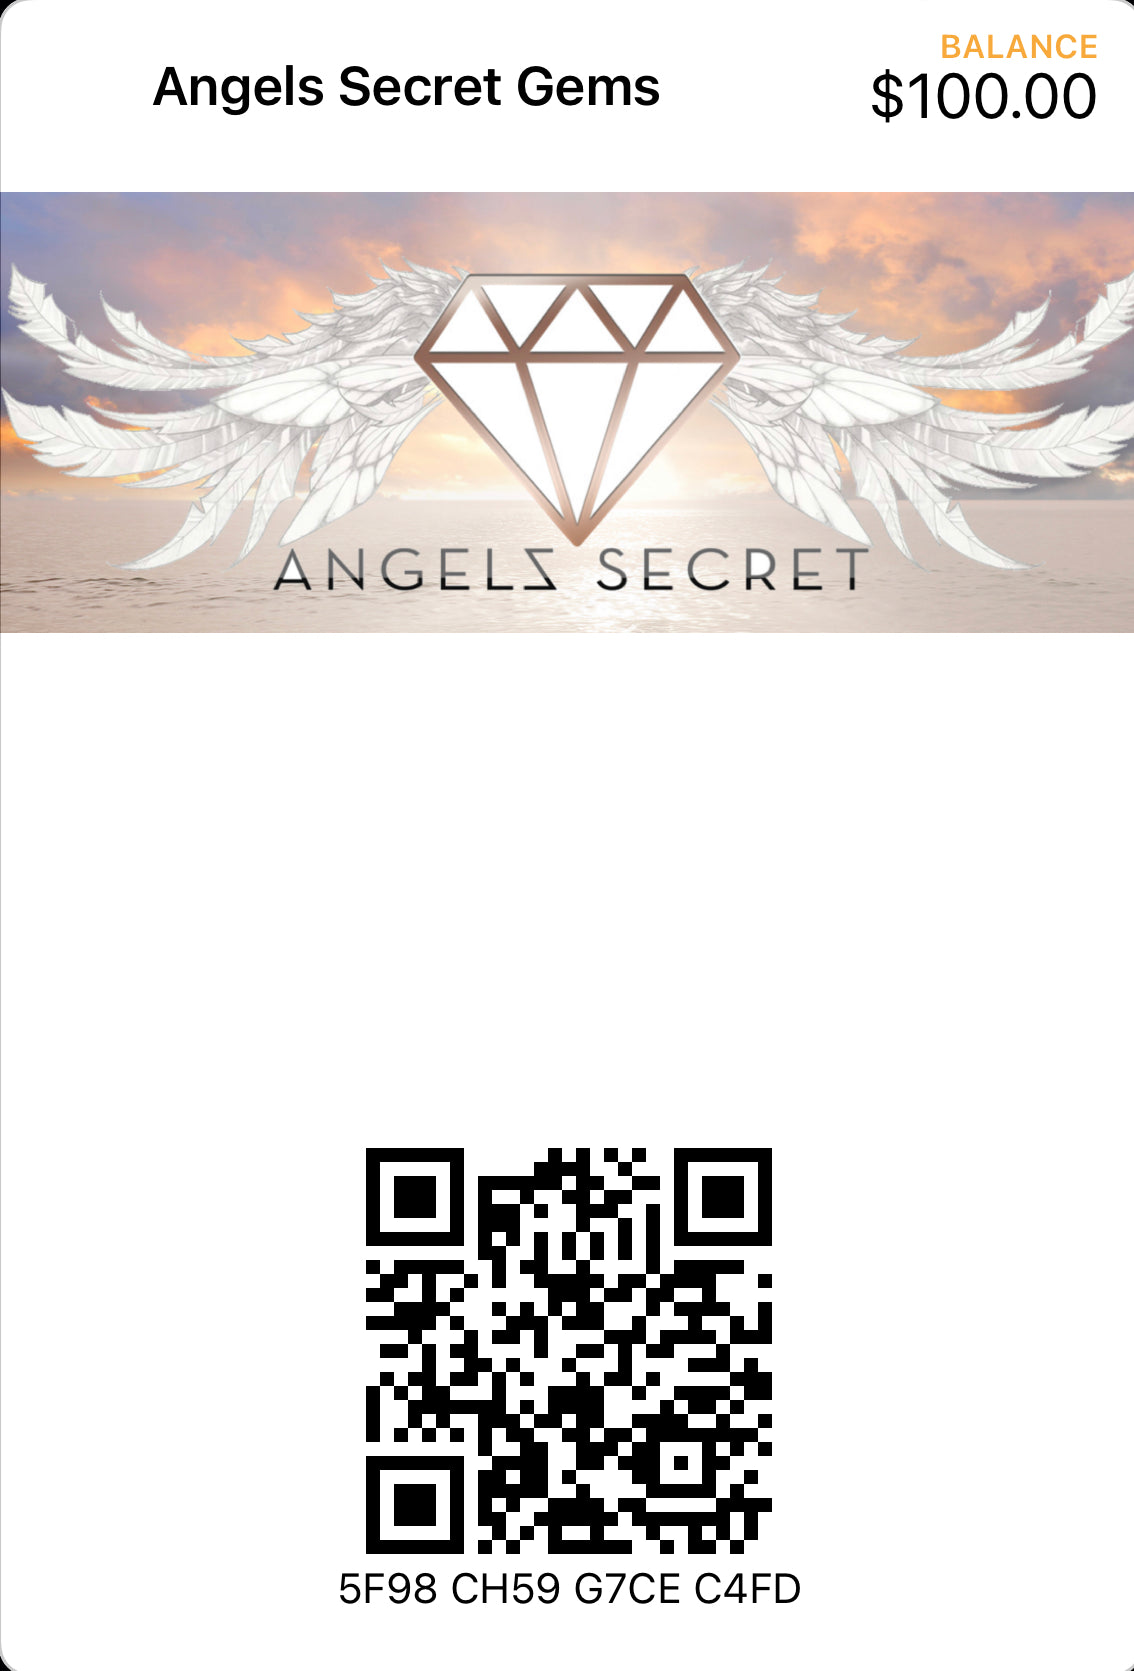 Angels Secret Gems Gift Card